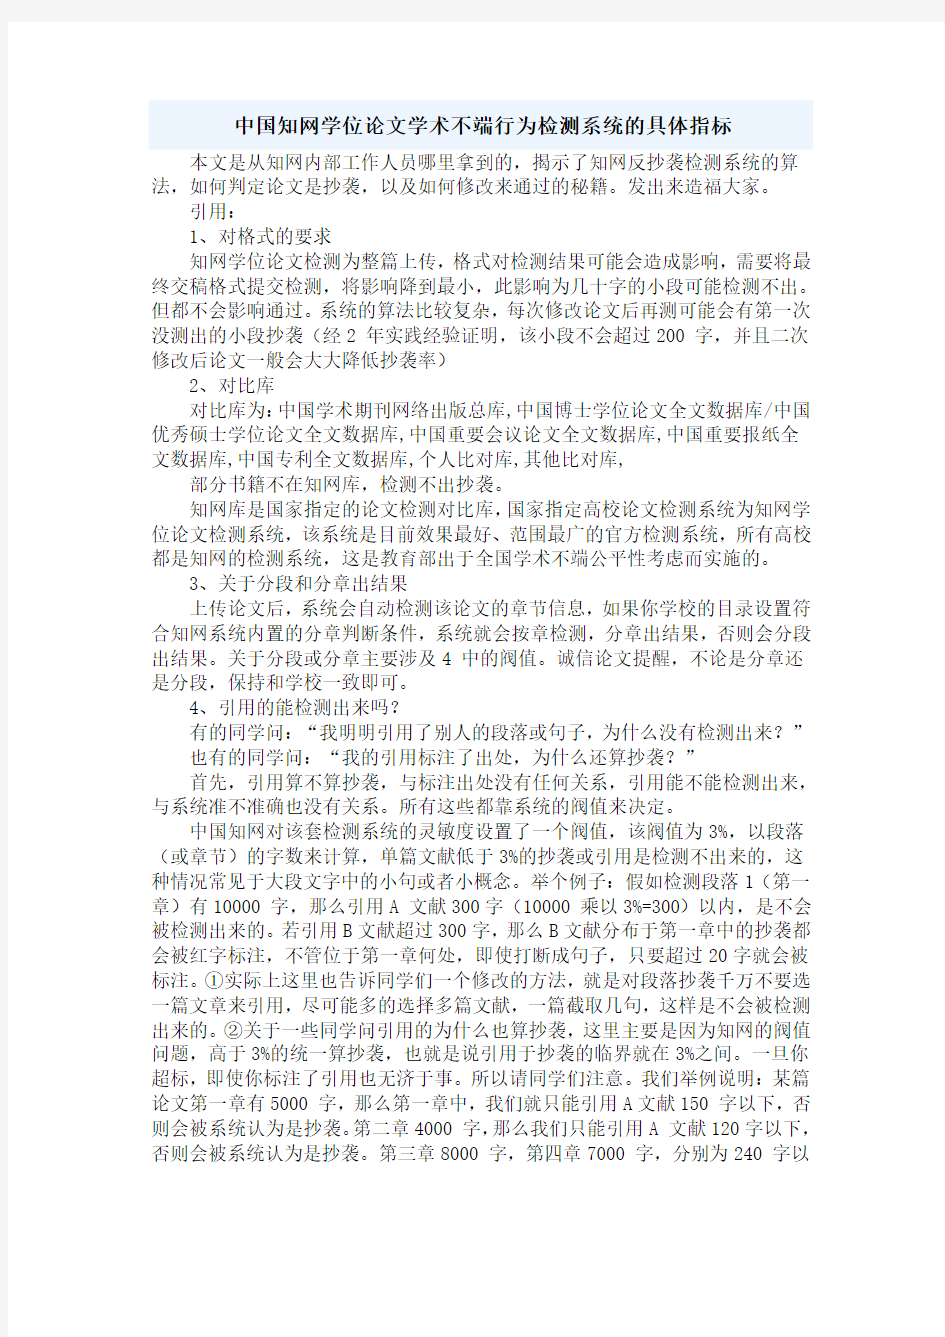 中国知网学位论文学术不端行为检测系统的具体指标